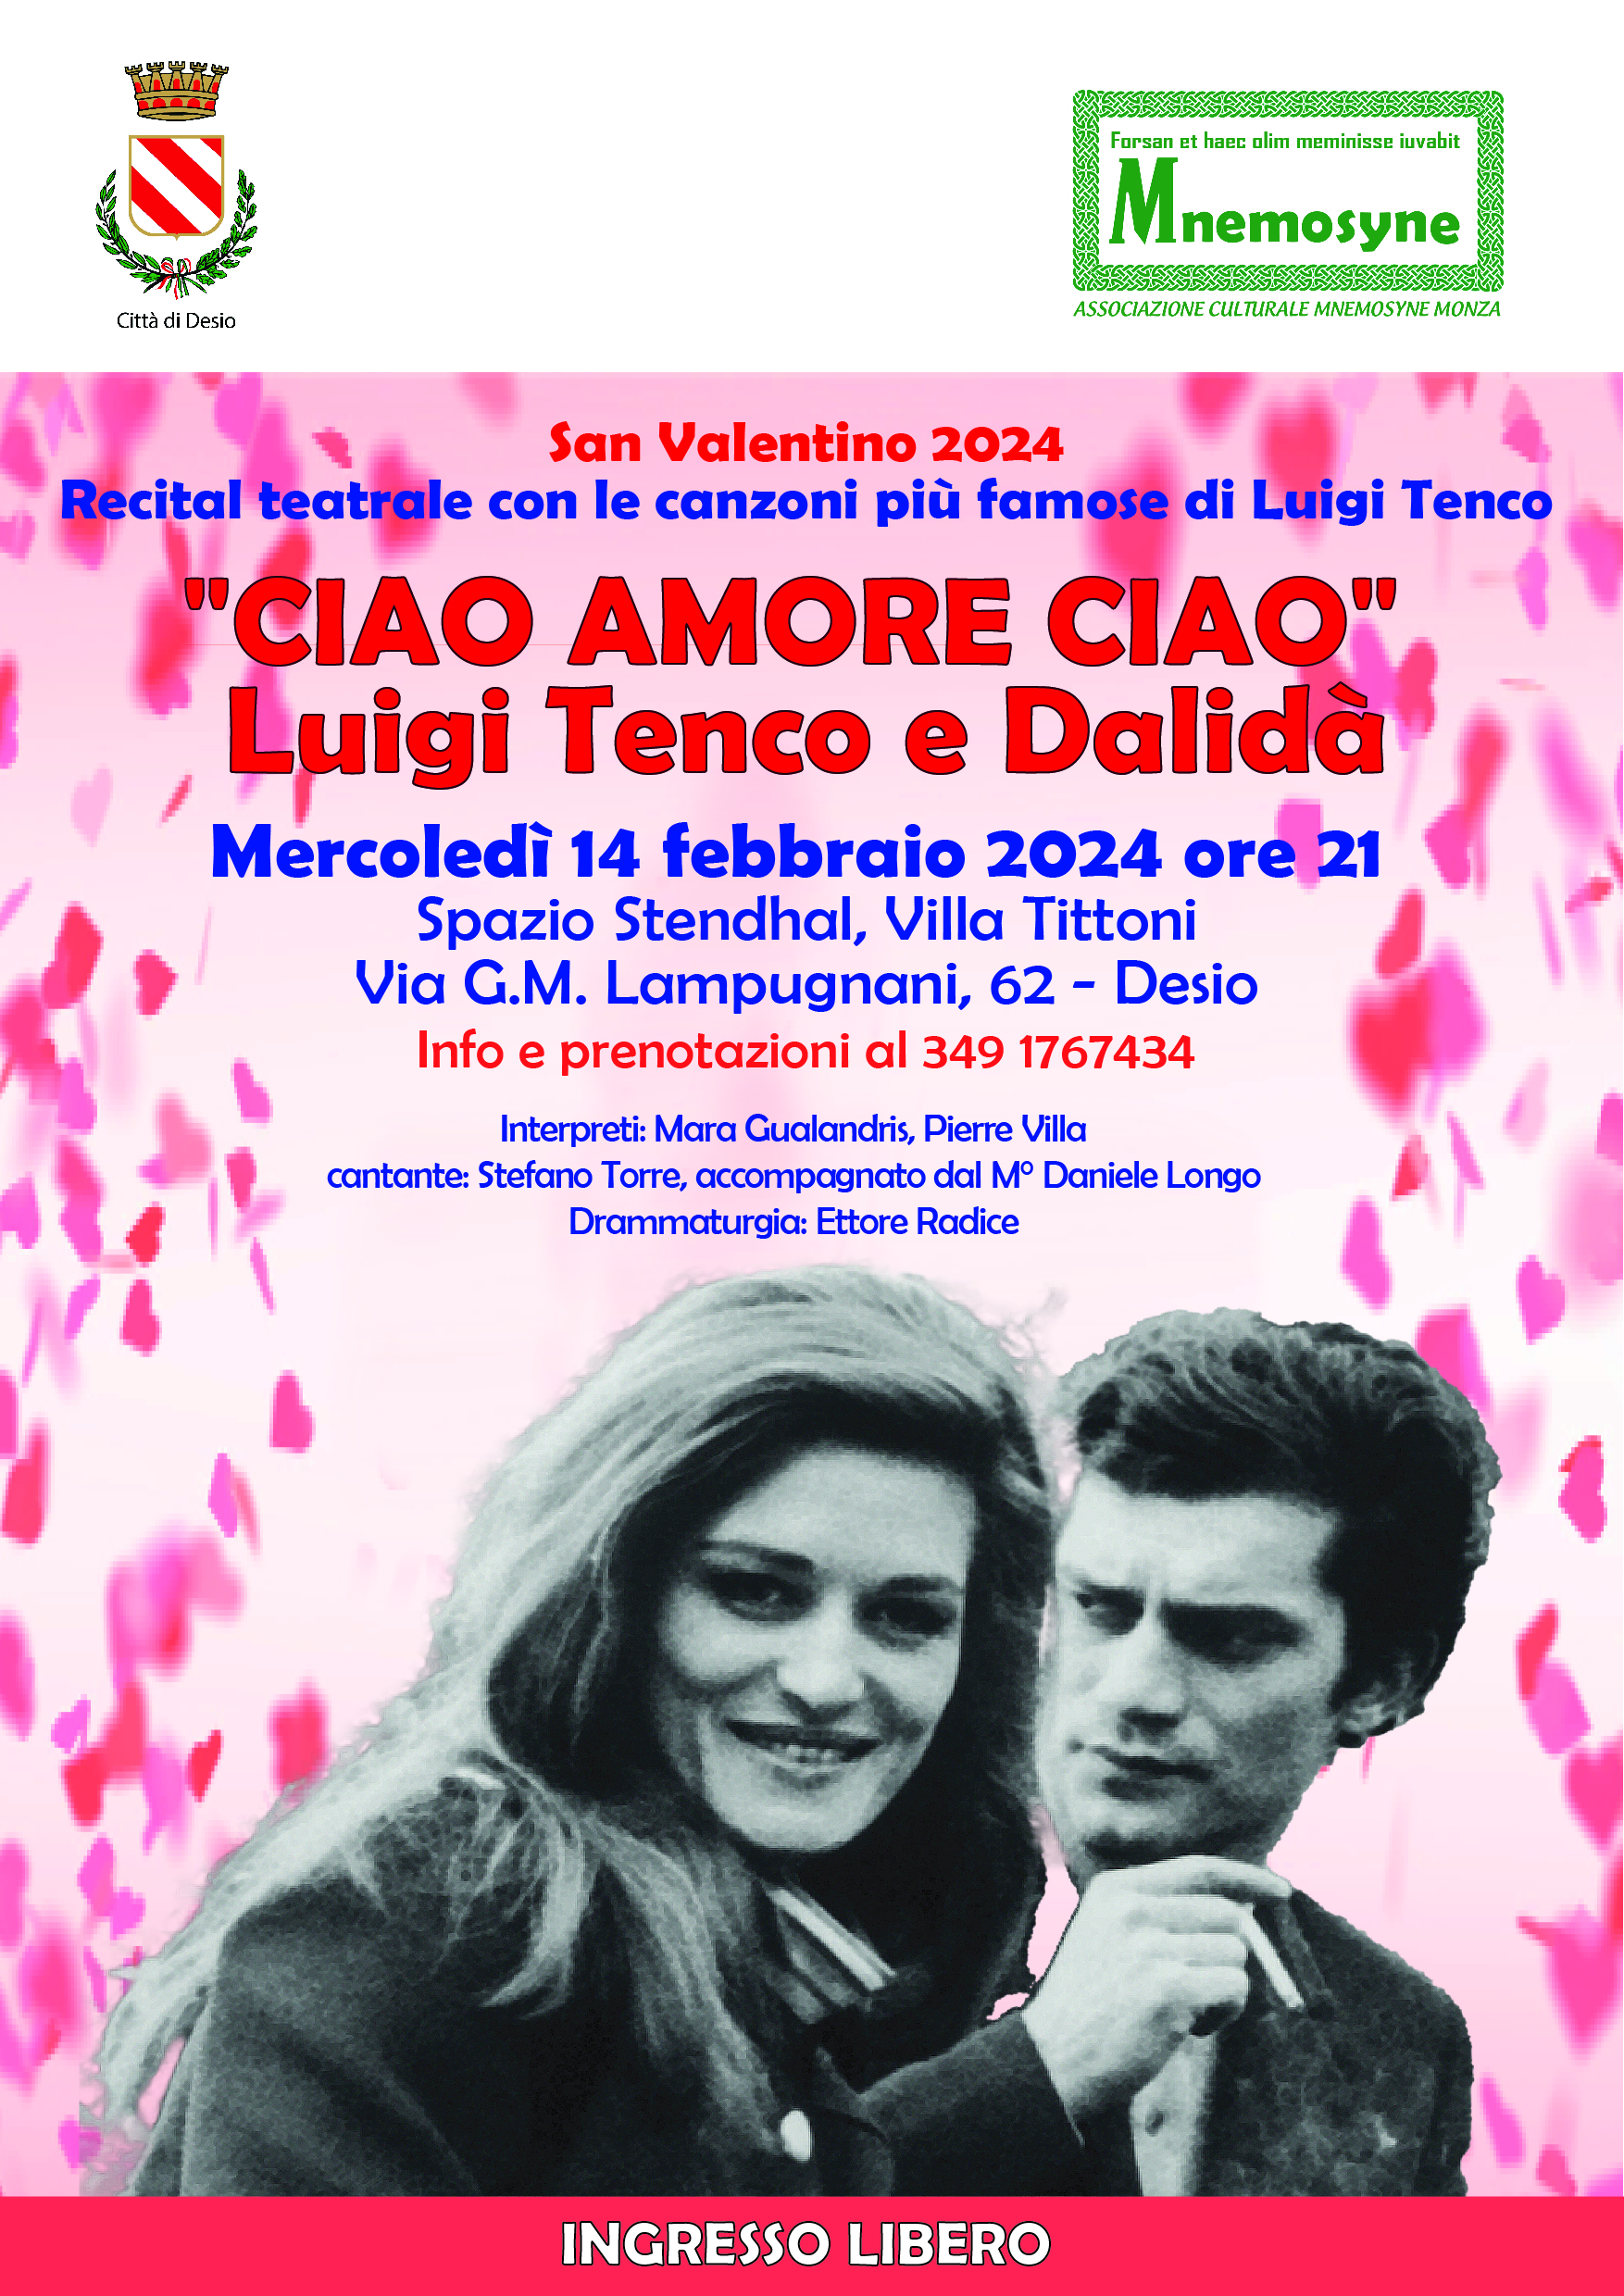 Ciao Amore Ciao Luigi Tenco e Dalidà